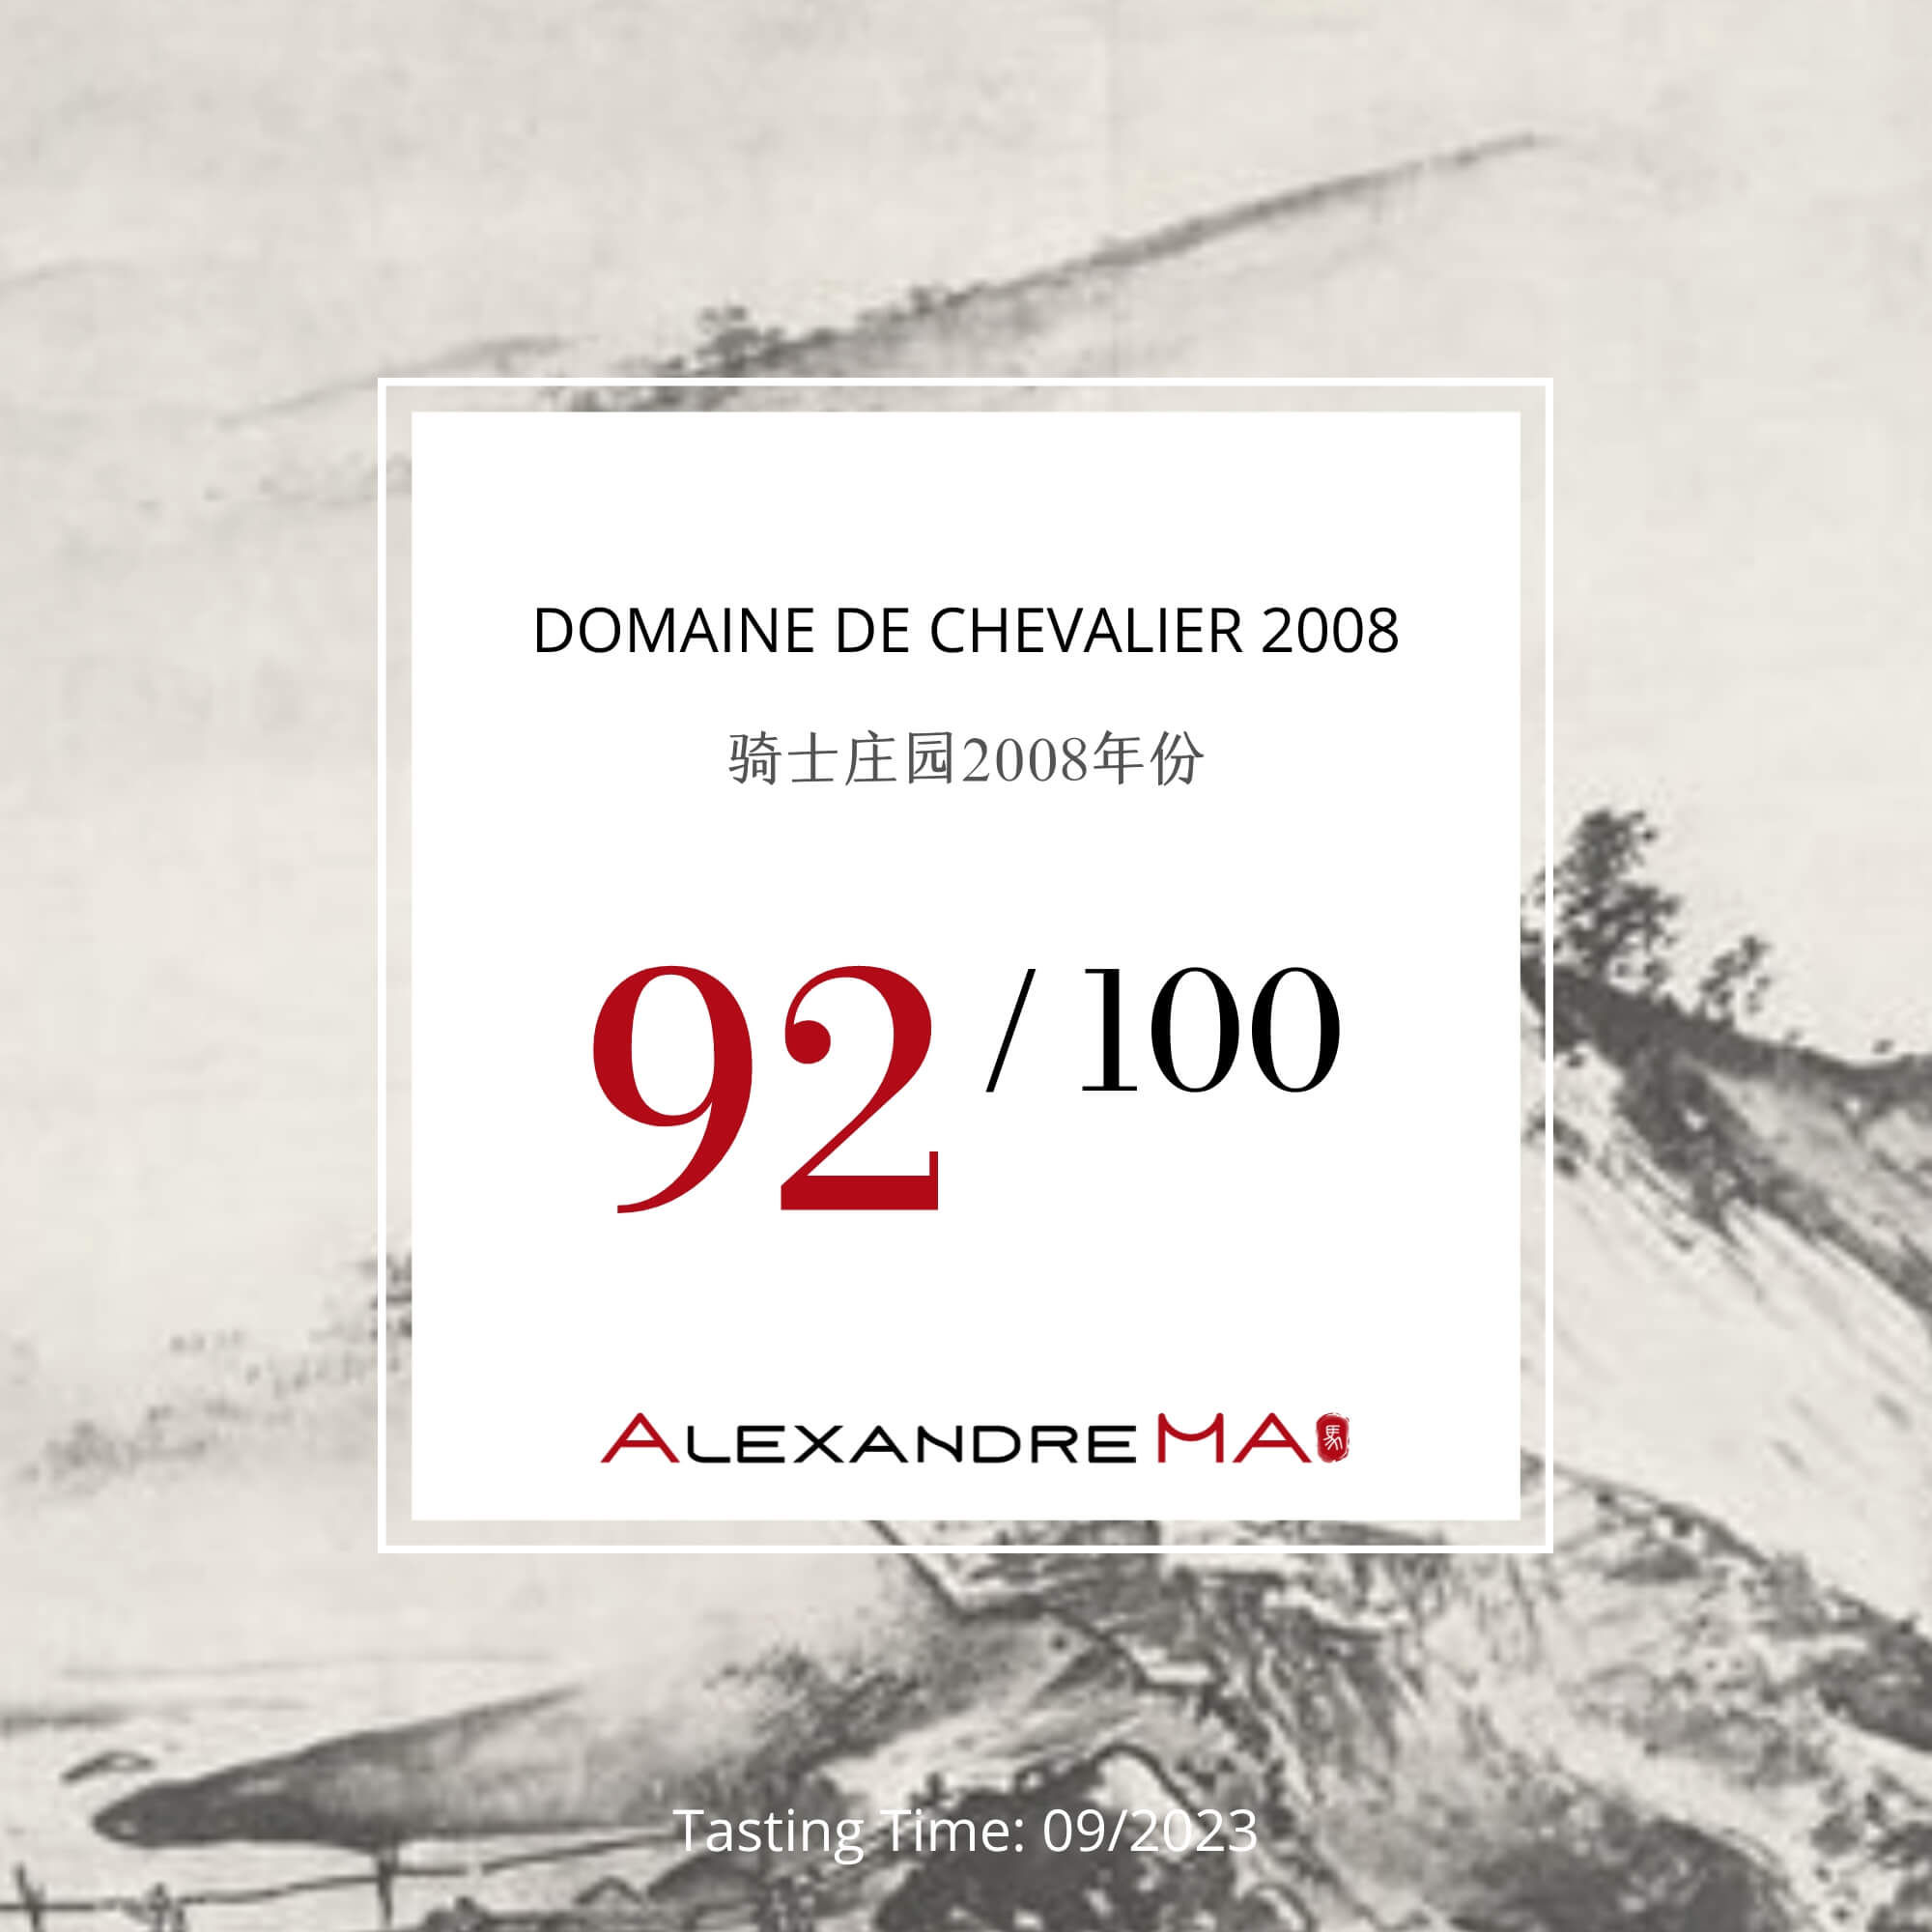 Domaine de Chevalier 2008 - Alexandre MA